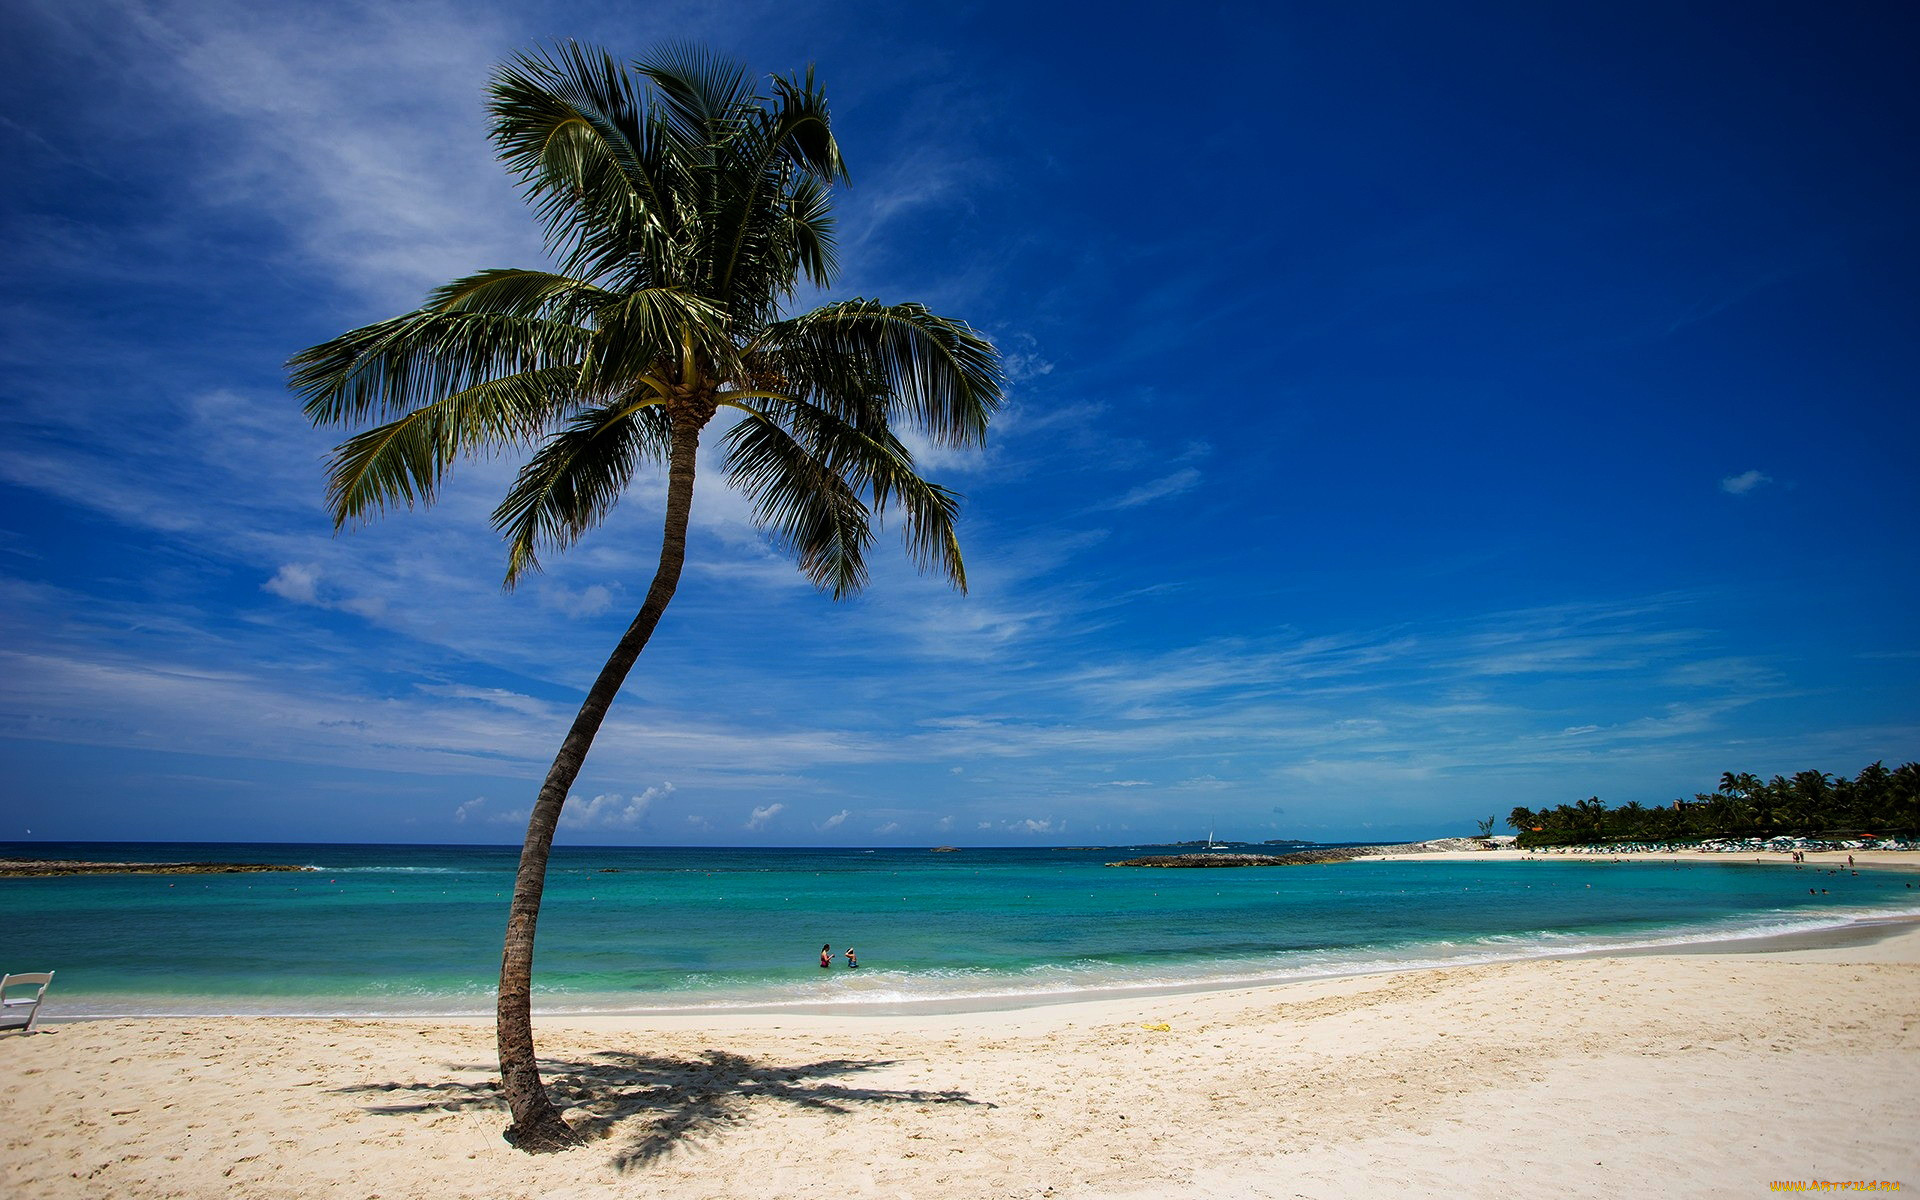 Фото пляжа с пальмами и морем